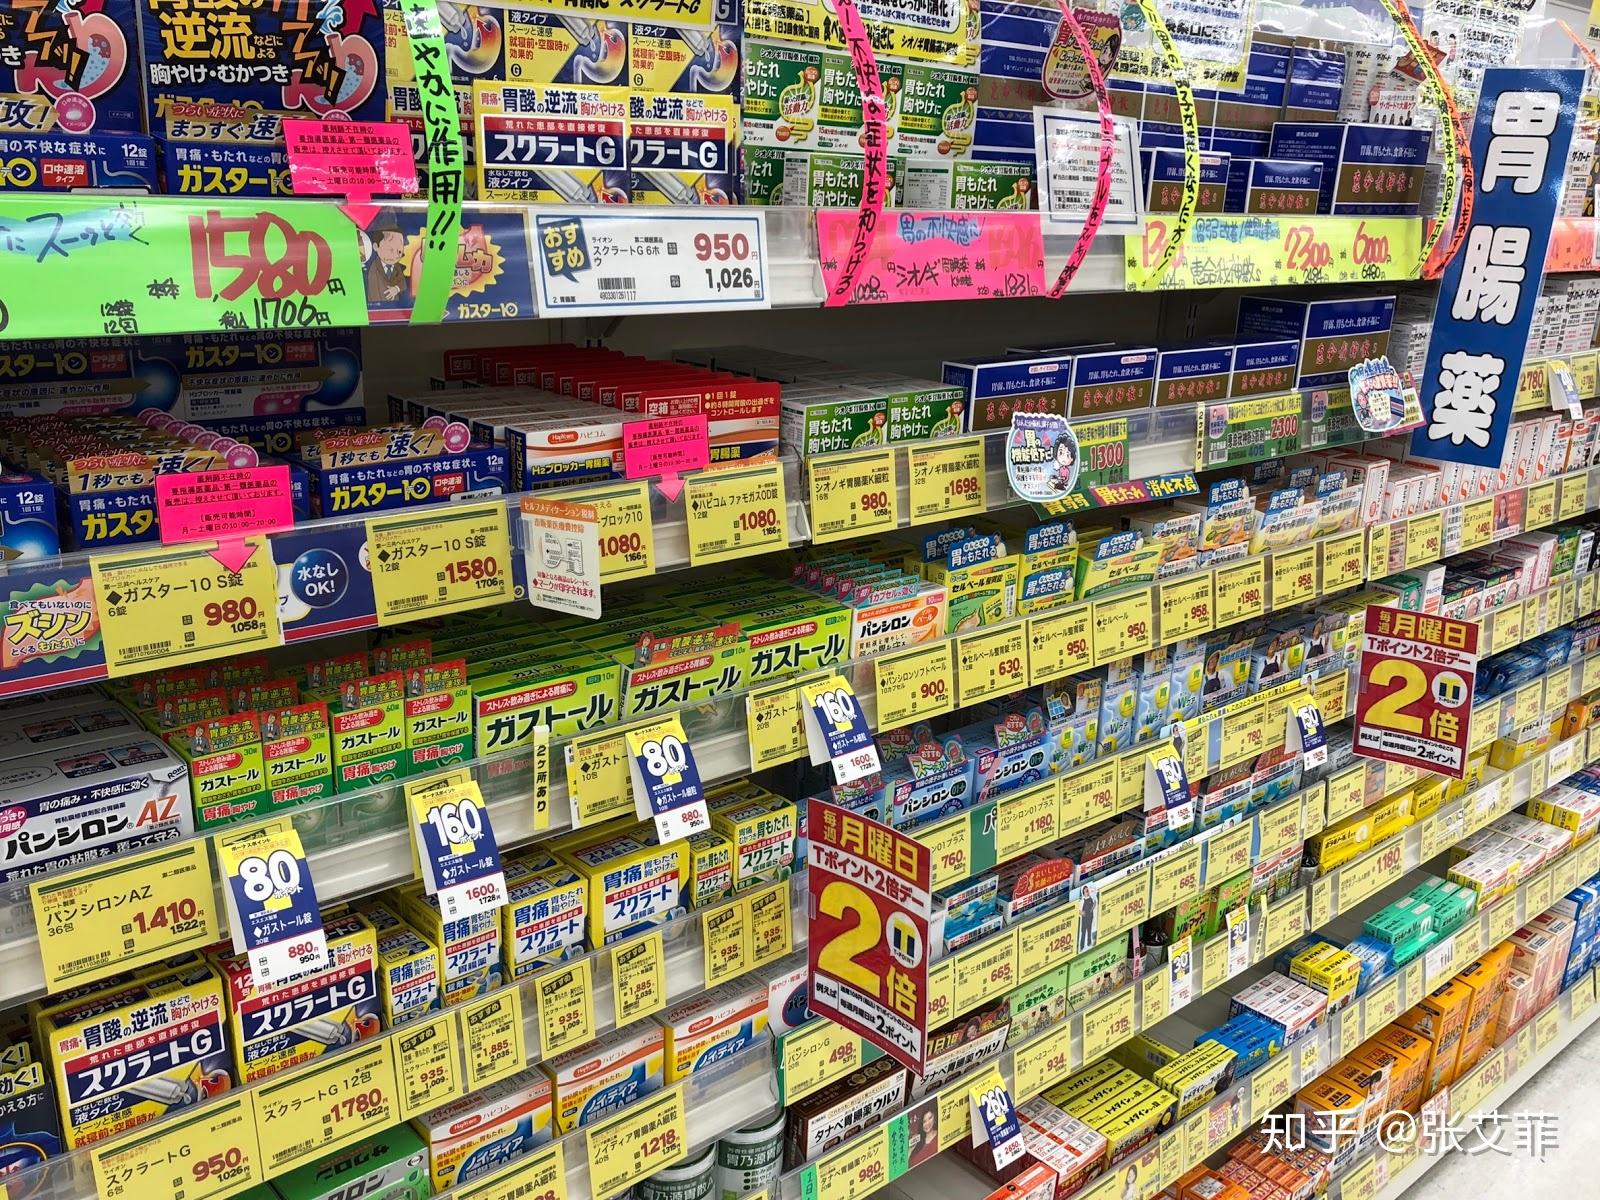 【2020日本必买药妆】 日本感冒药12选 快速解决发烧、头痛、流鼻水、咳嗽等症状 | MATCHA -日本旅游网络杂志